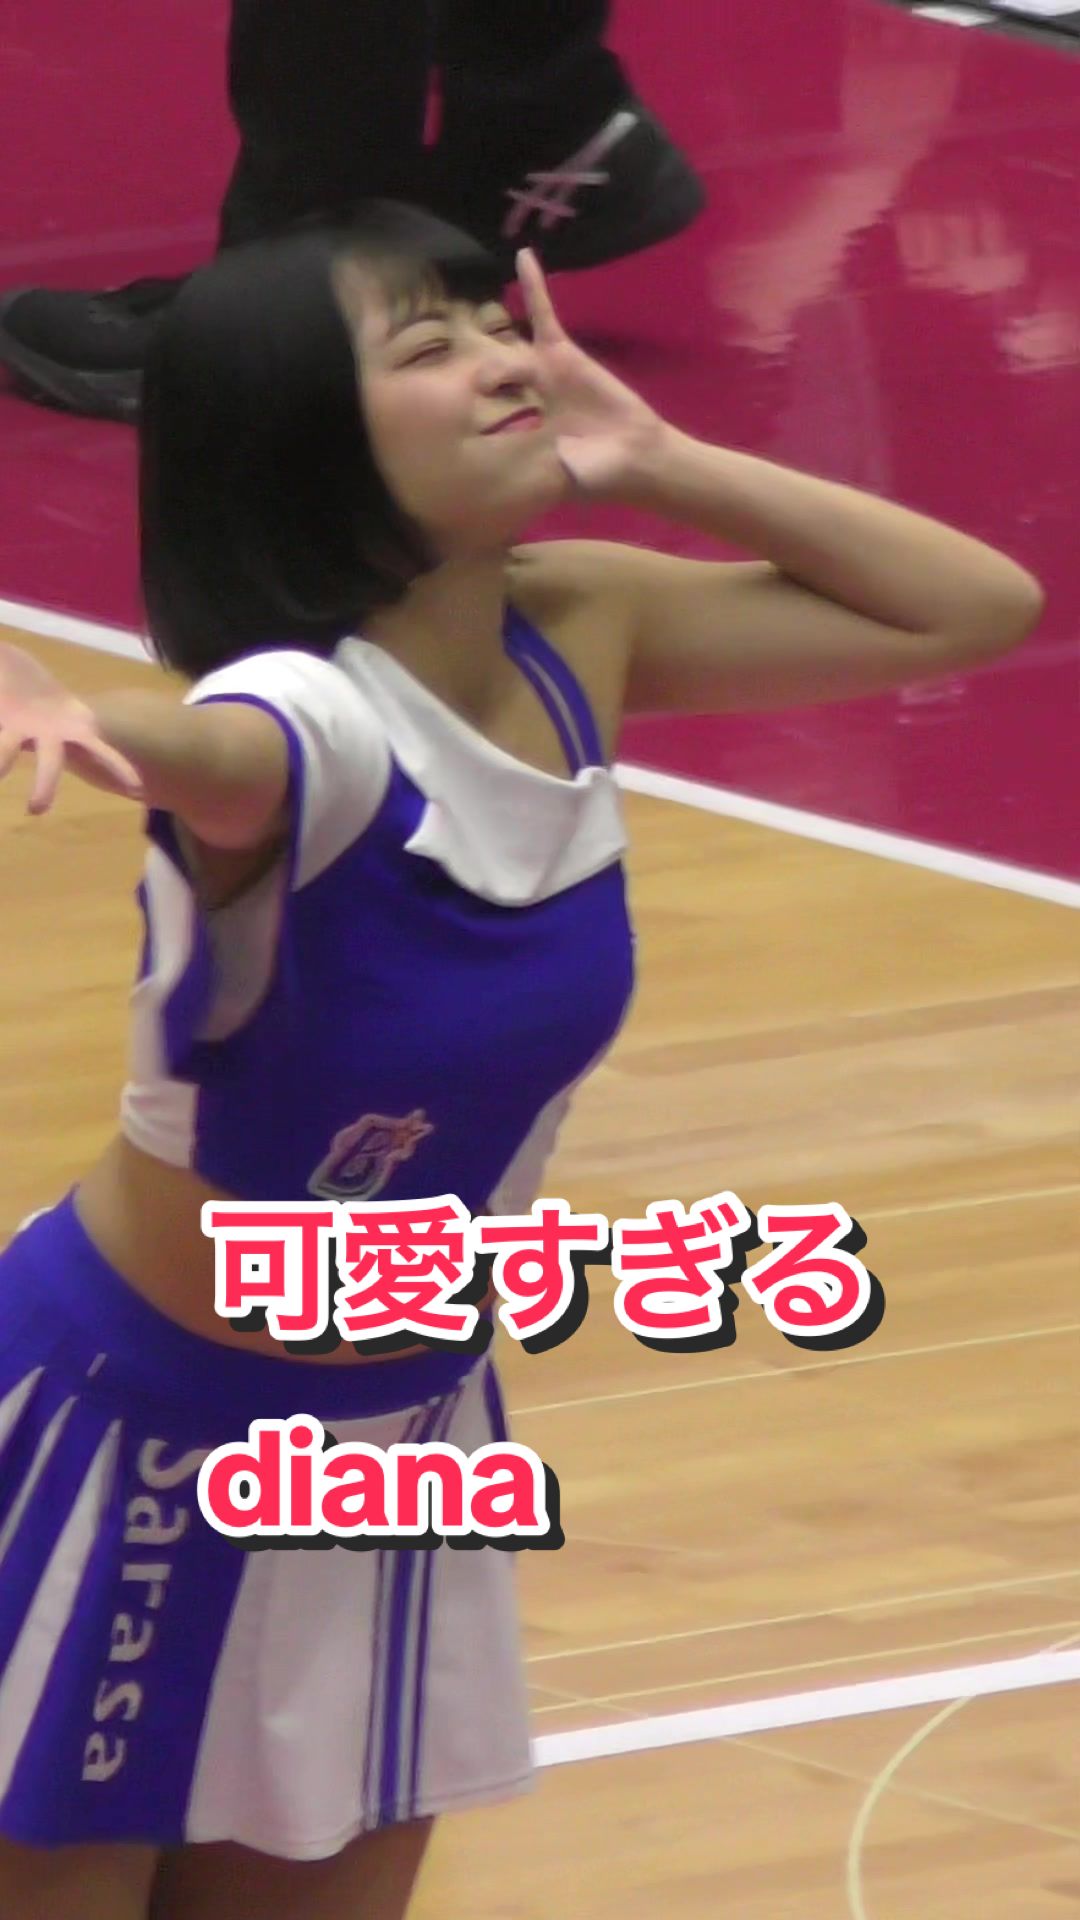 【笑顔が可愛いチアリーダーダンス！】可愛すぎるdiana #kawaii #ブレイブtv #bravetv #チア #cheerleader #japanesegirl #sarasa #ベイスターズ 